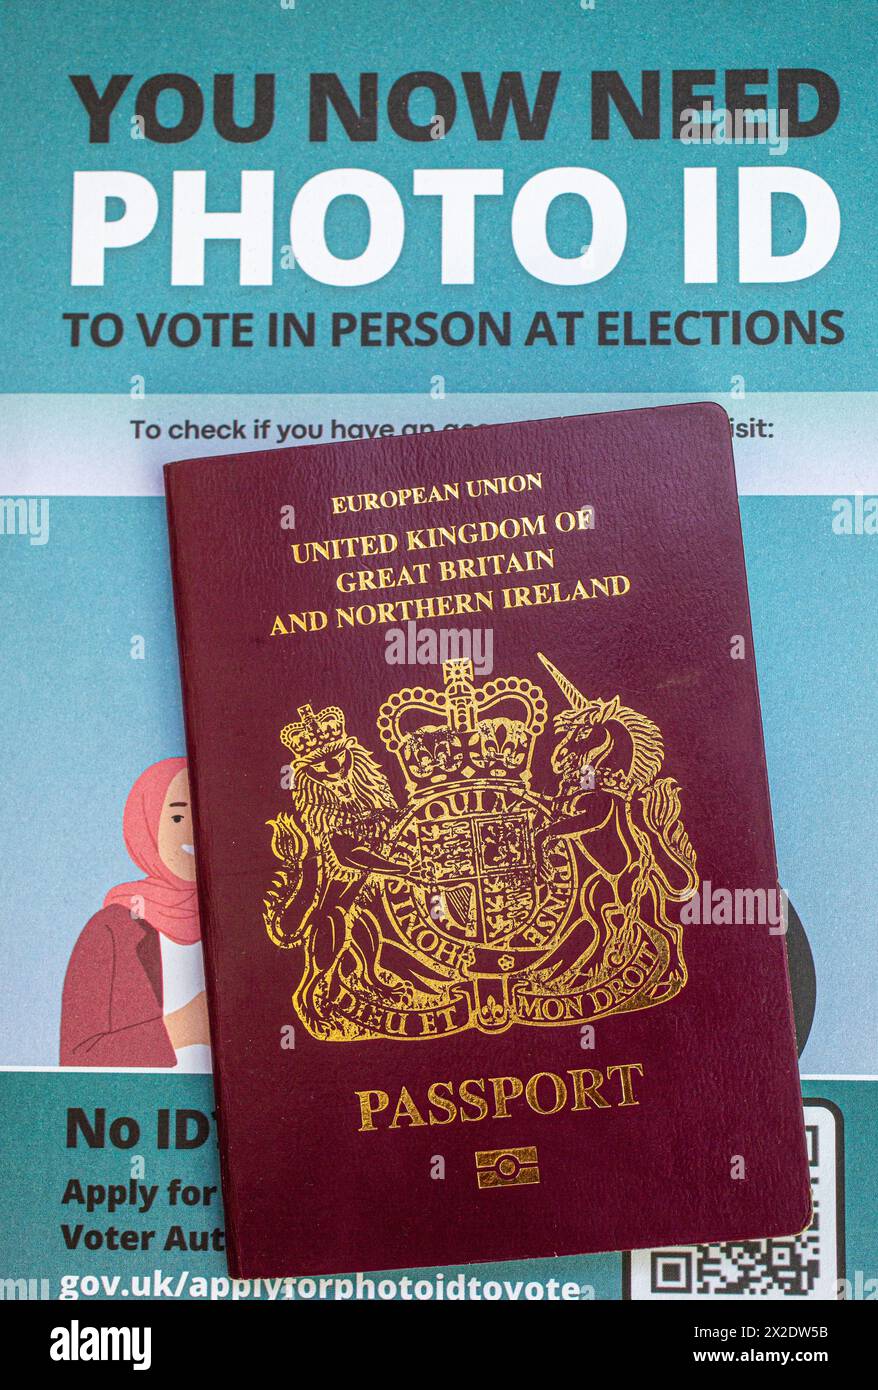 Passeport britannique avec un dépliant montrant que les électeurs en Angleterre devront présenter une pièce d'identité avec photo pour voter dans les bureaux de vote lors de certaines élections. ROYAUME-UNI Banque D'Images